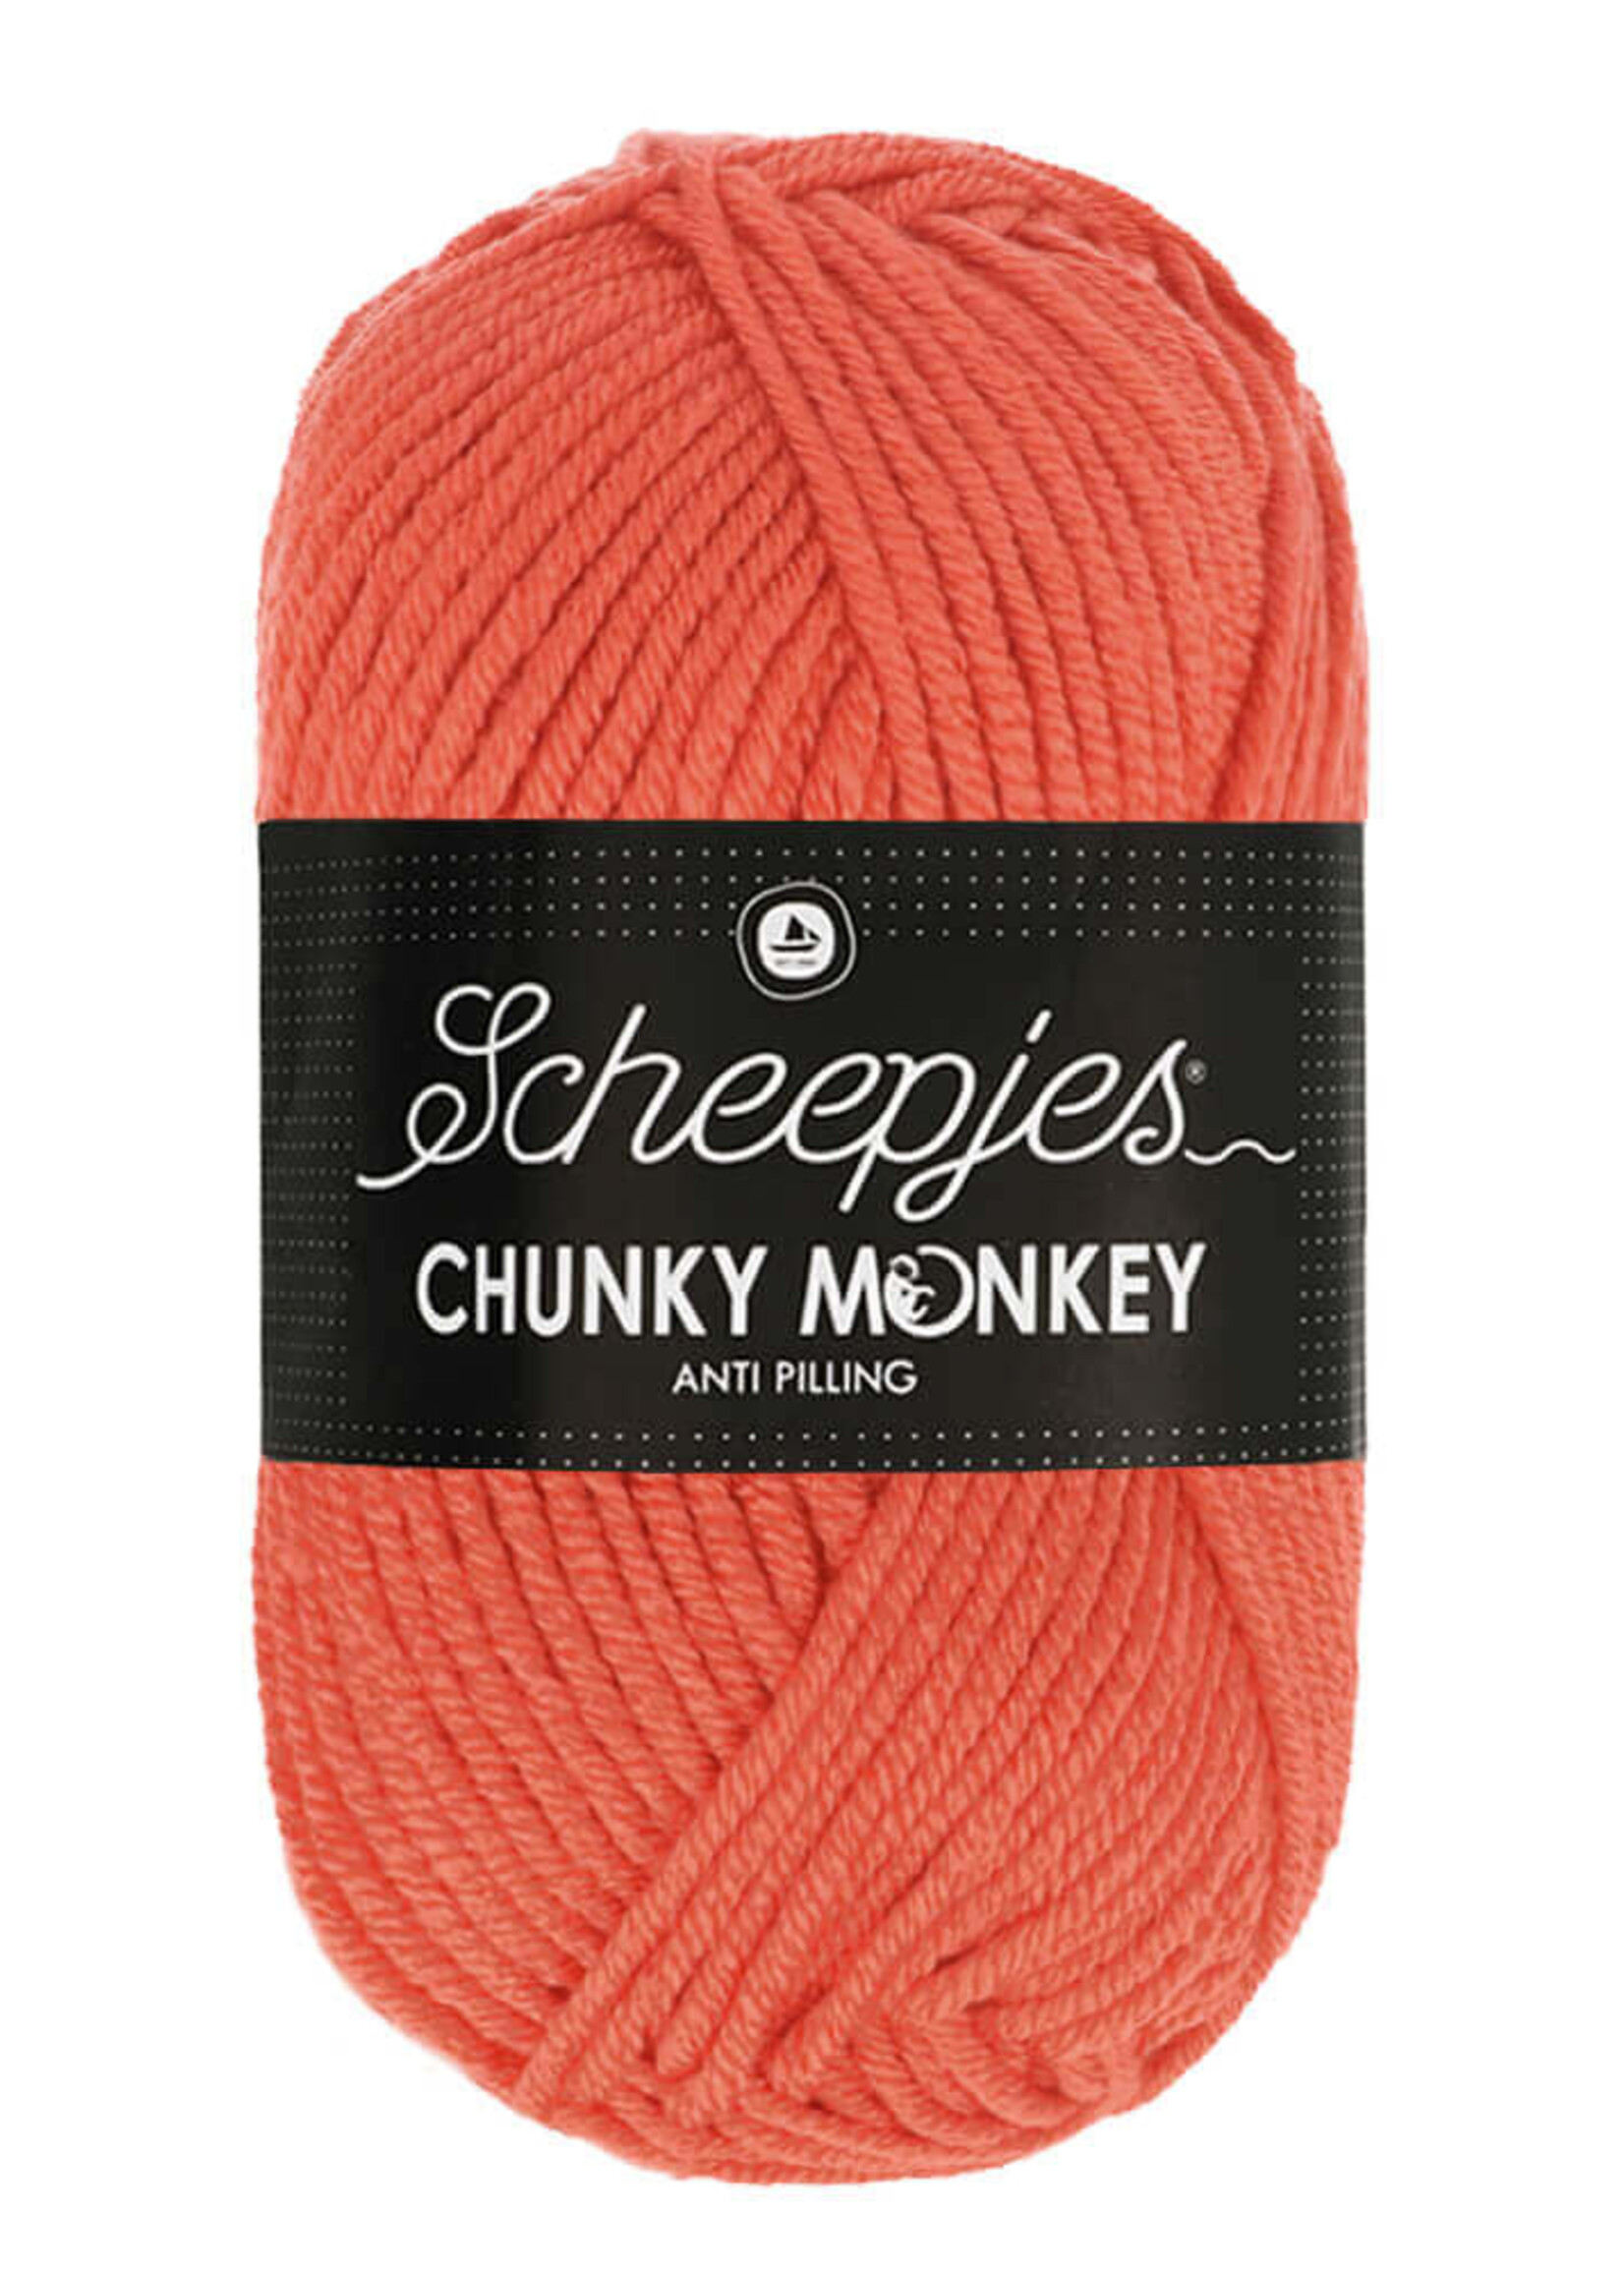 Scheepjes Chunky Monkey - Scheepjes -1132 Coral